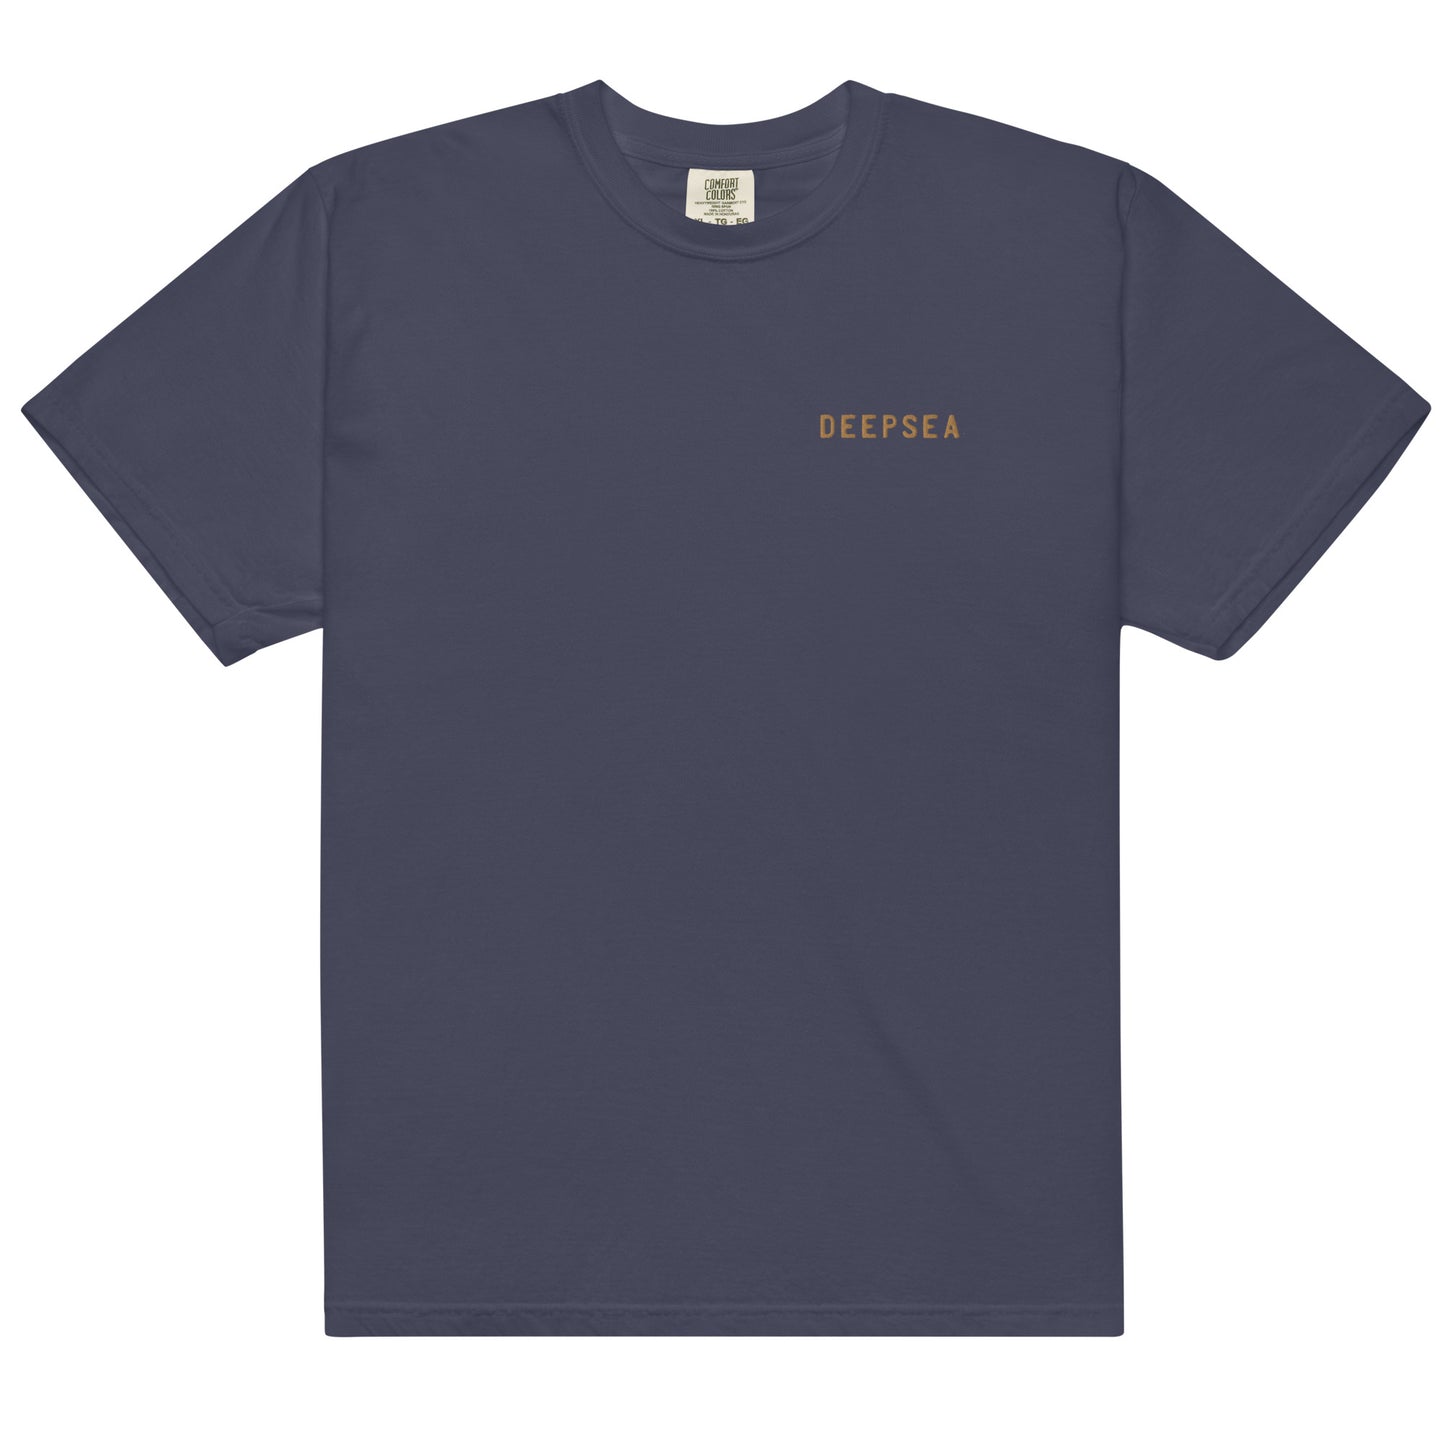 DEEPSEA™ Men’s garment-dyed heavyweight t-shirt